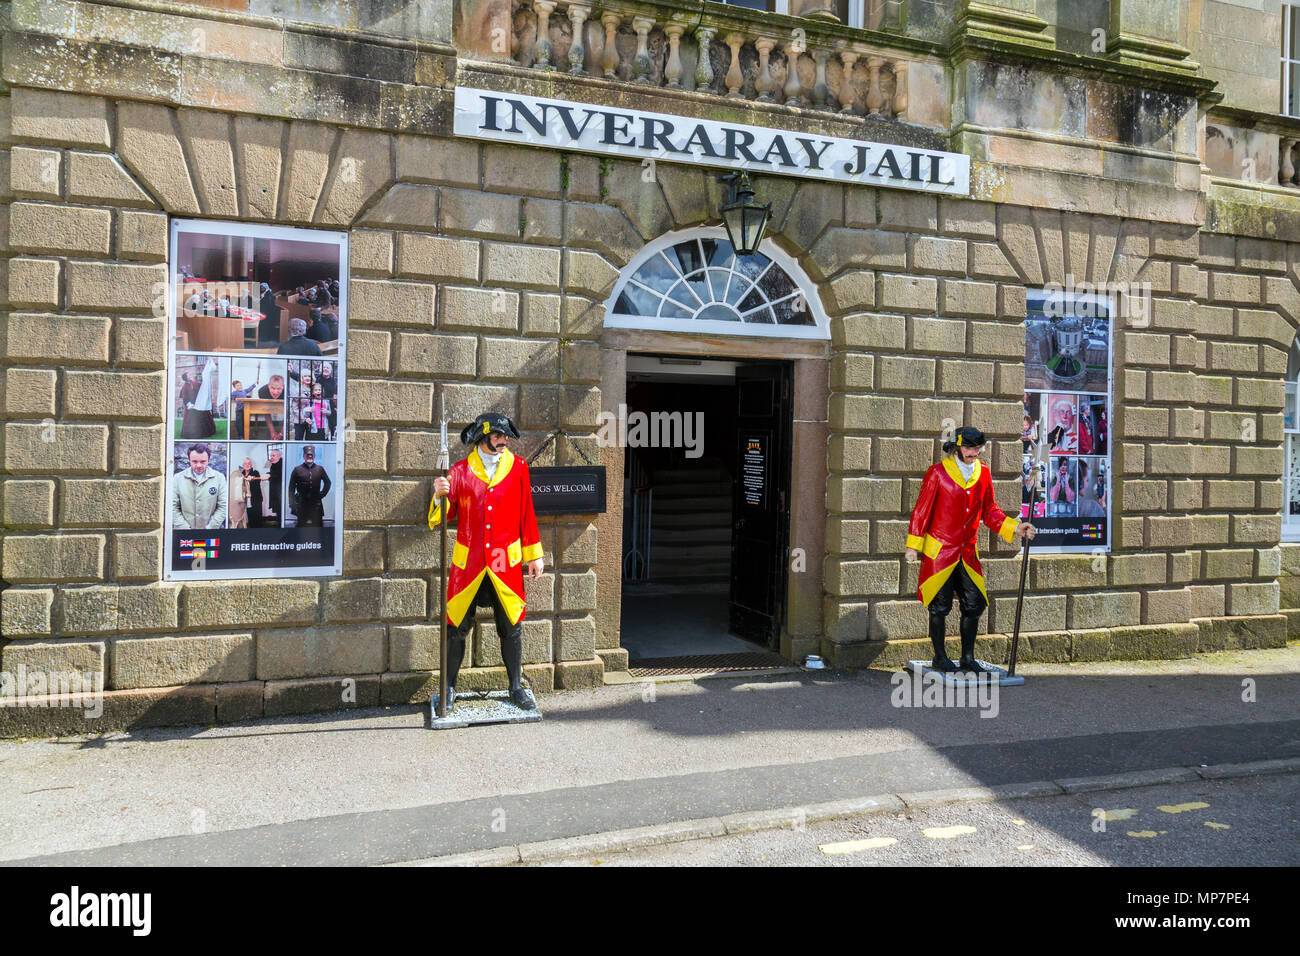 Deux gardes se tiennent à l'extérieur de couleur vive la classe 1820 géorgien historique bâtiment classé 'A' de la prison d'Inveraray, ARGYLL & BUTE, Ecosse, Royaume-Uni Banque D'Images